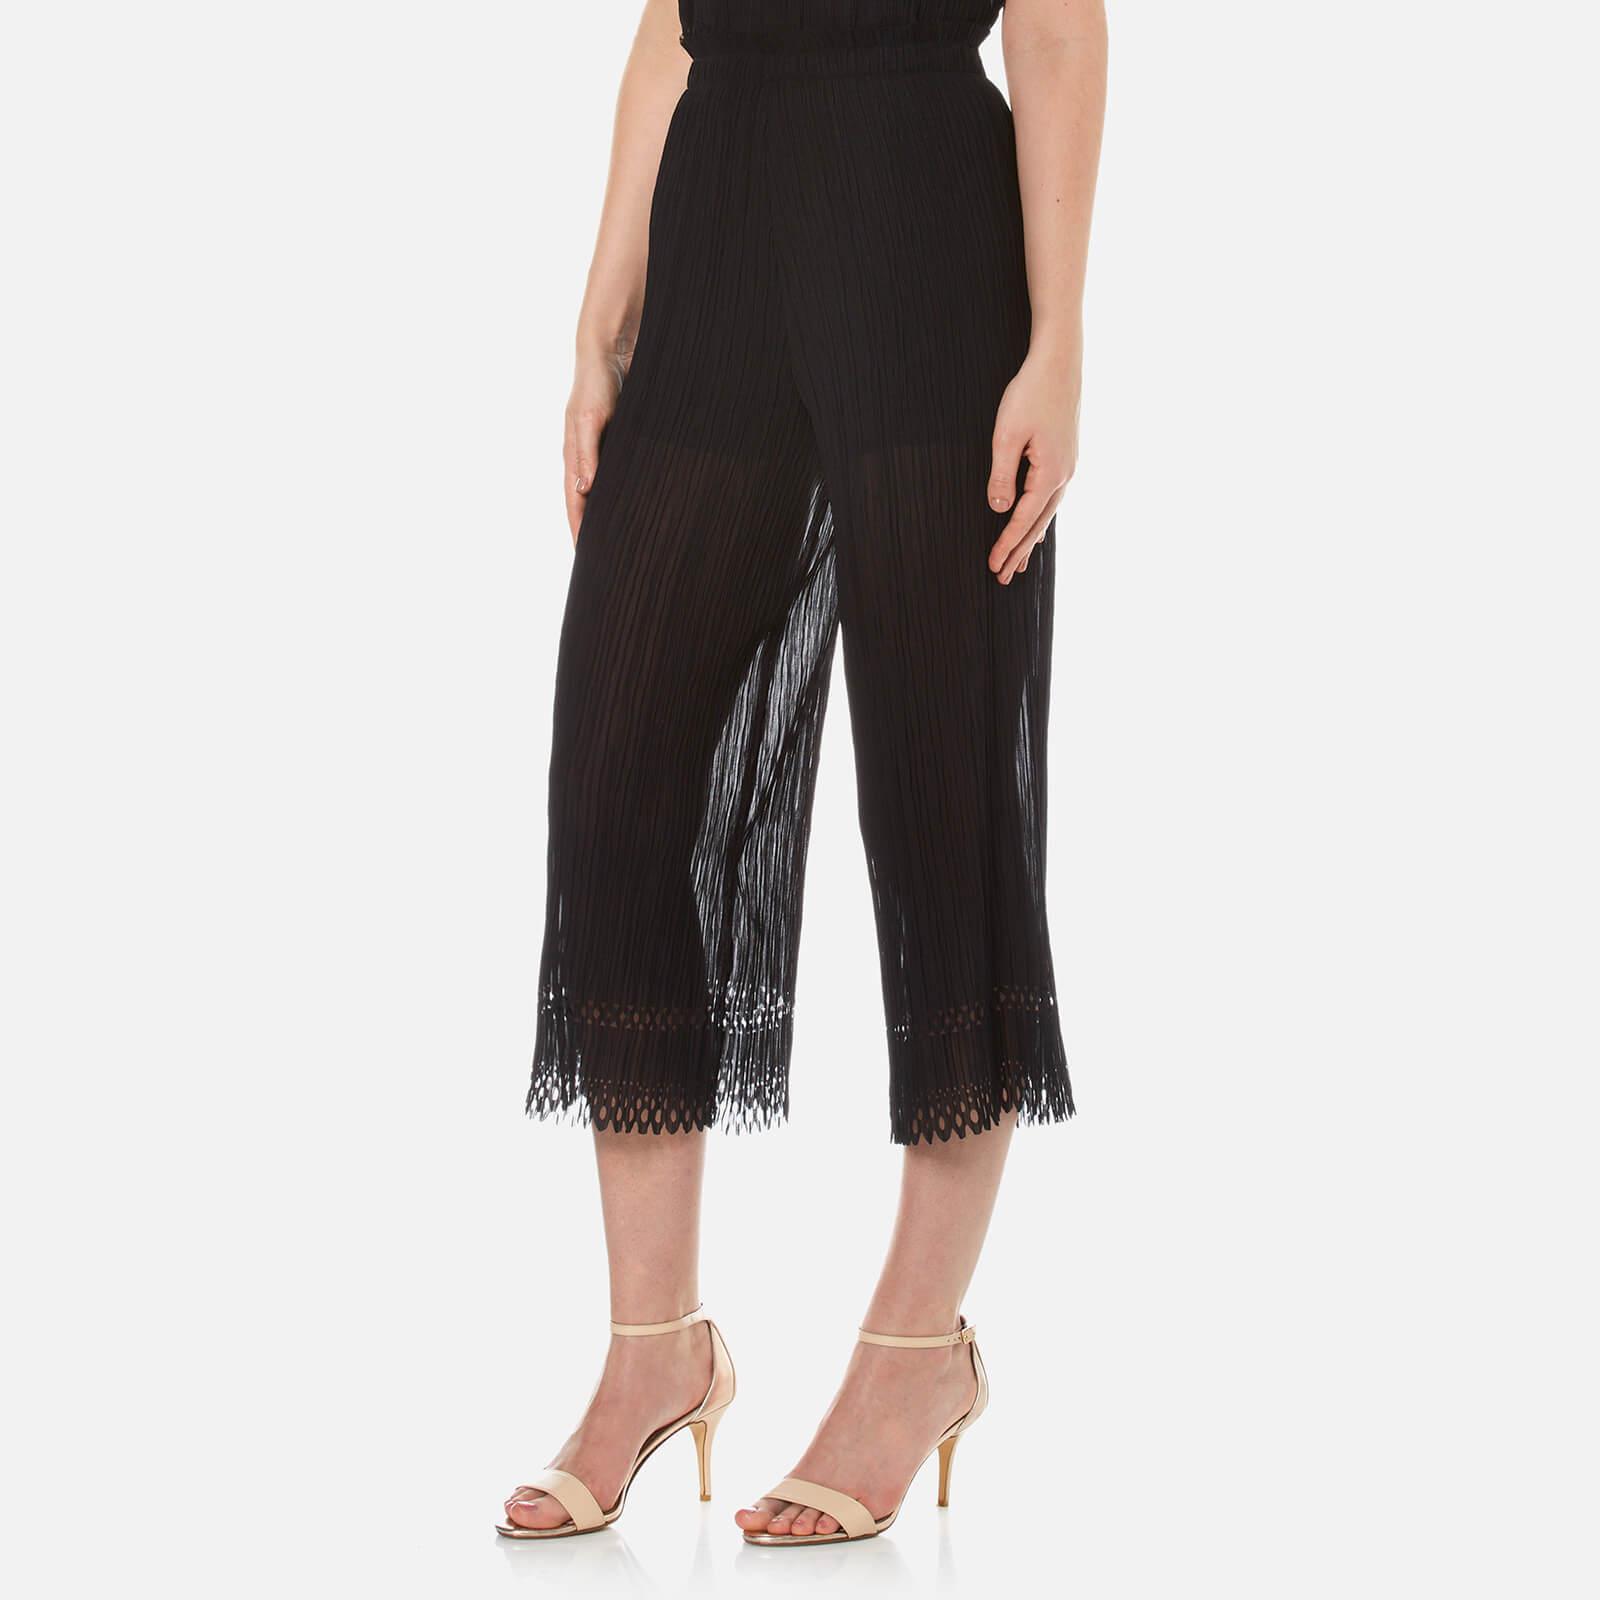 Lyst - Bec & Bridge Women's Lattice Shadow Pants in Black